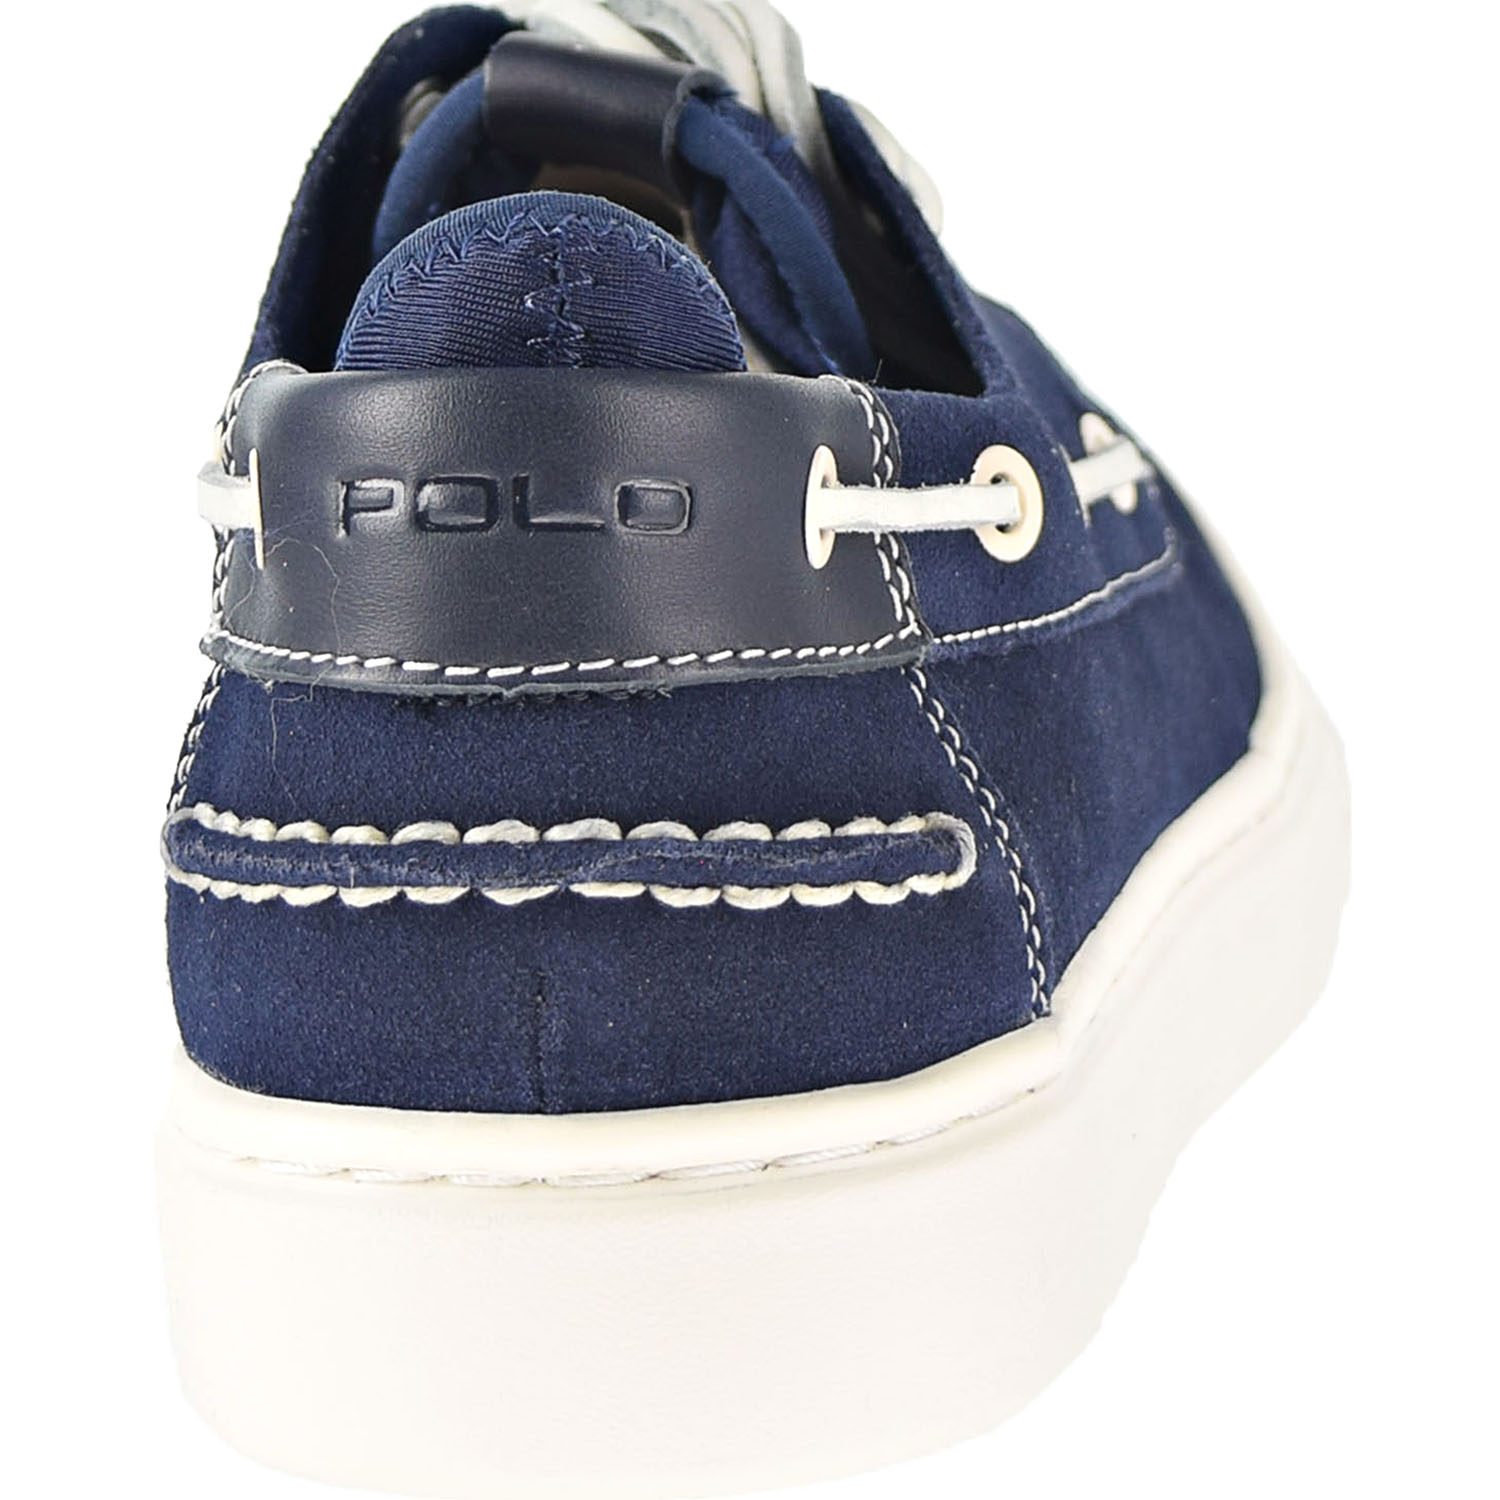 Polo Ralph Lauren Deck100 Men's Shoes Navy-Tan  809732272-001 - image 3 of 6